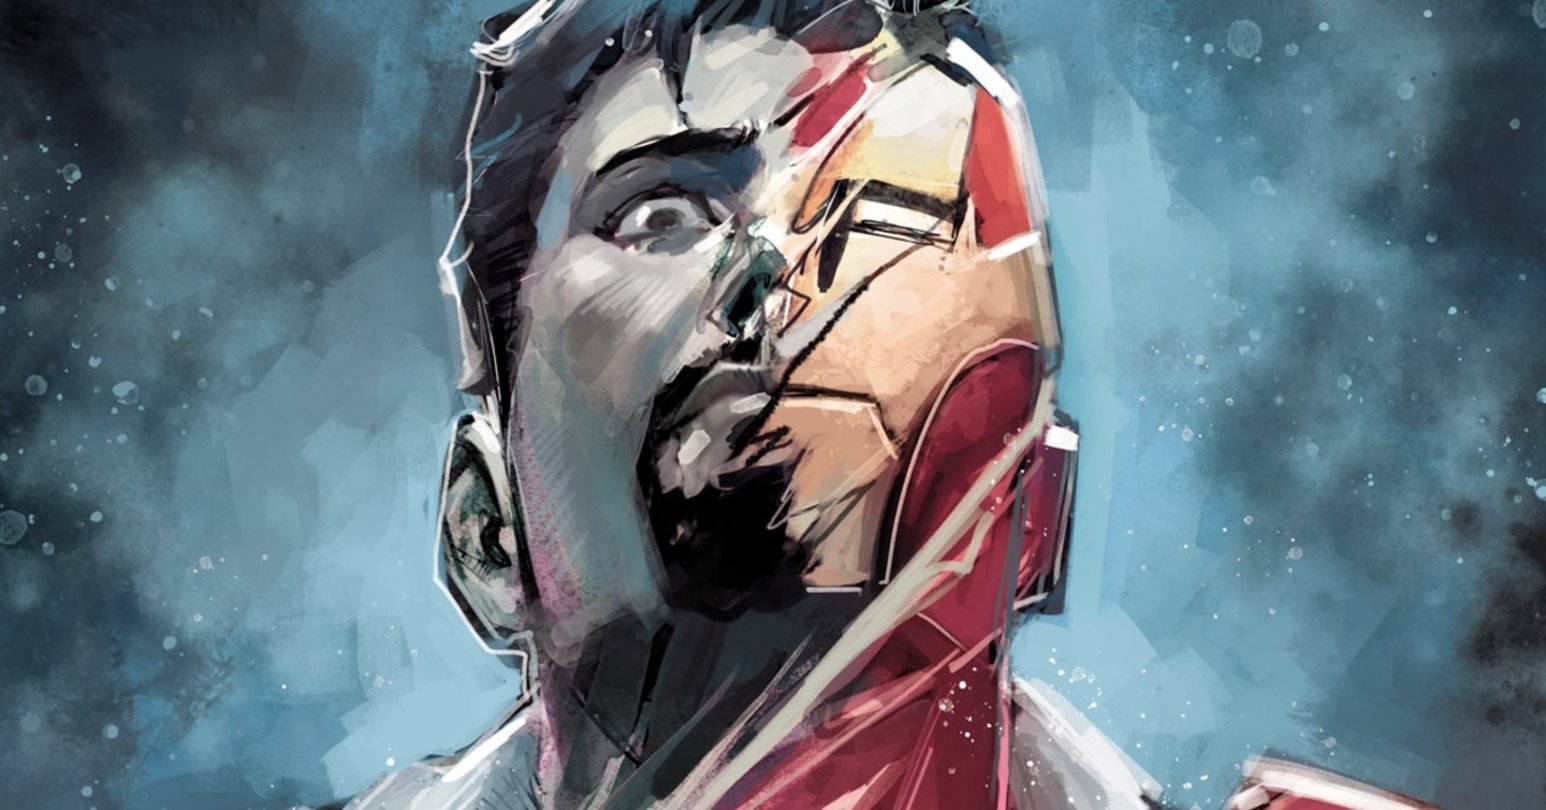 La nueva armadura de Iron Man revela todo su potencial y se convierte en una amenaza para los X-Men